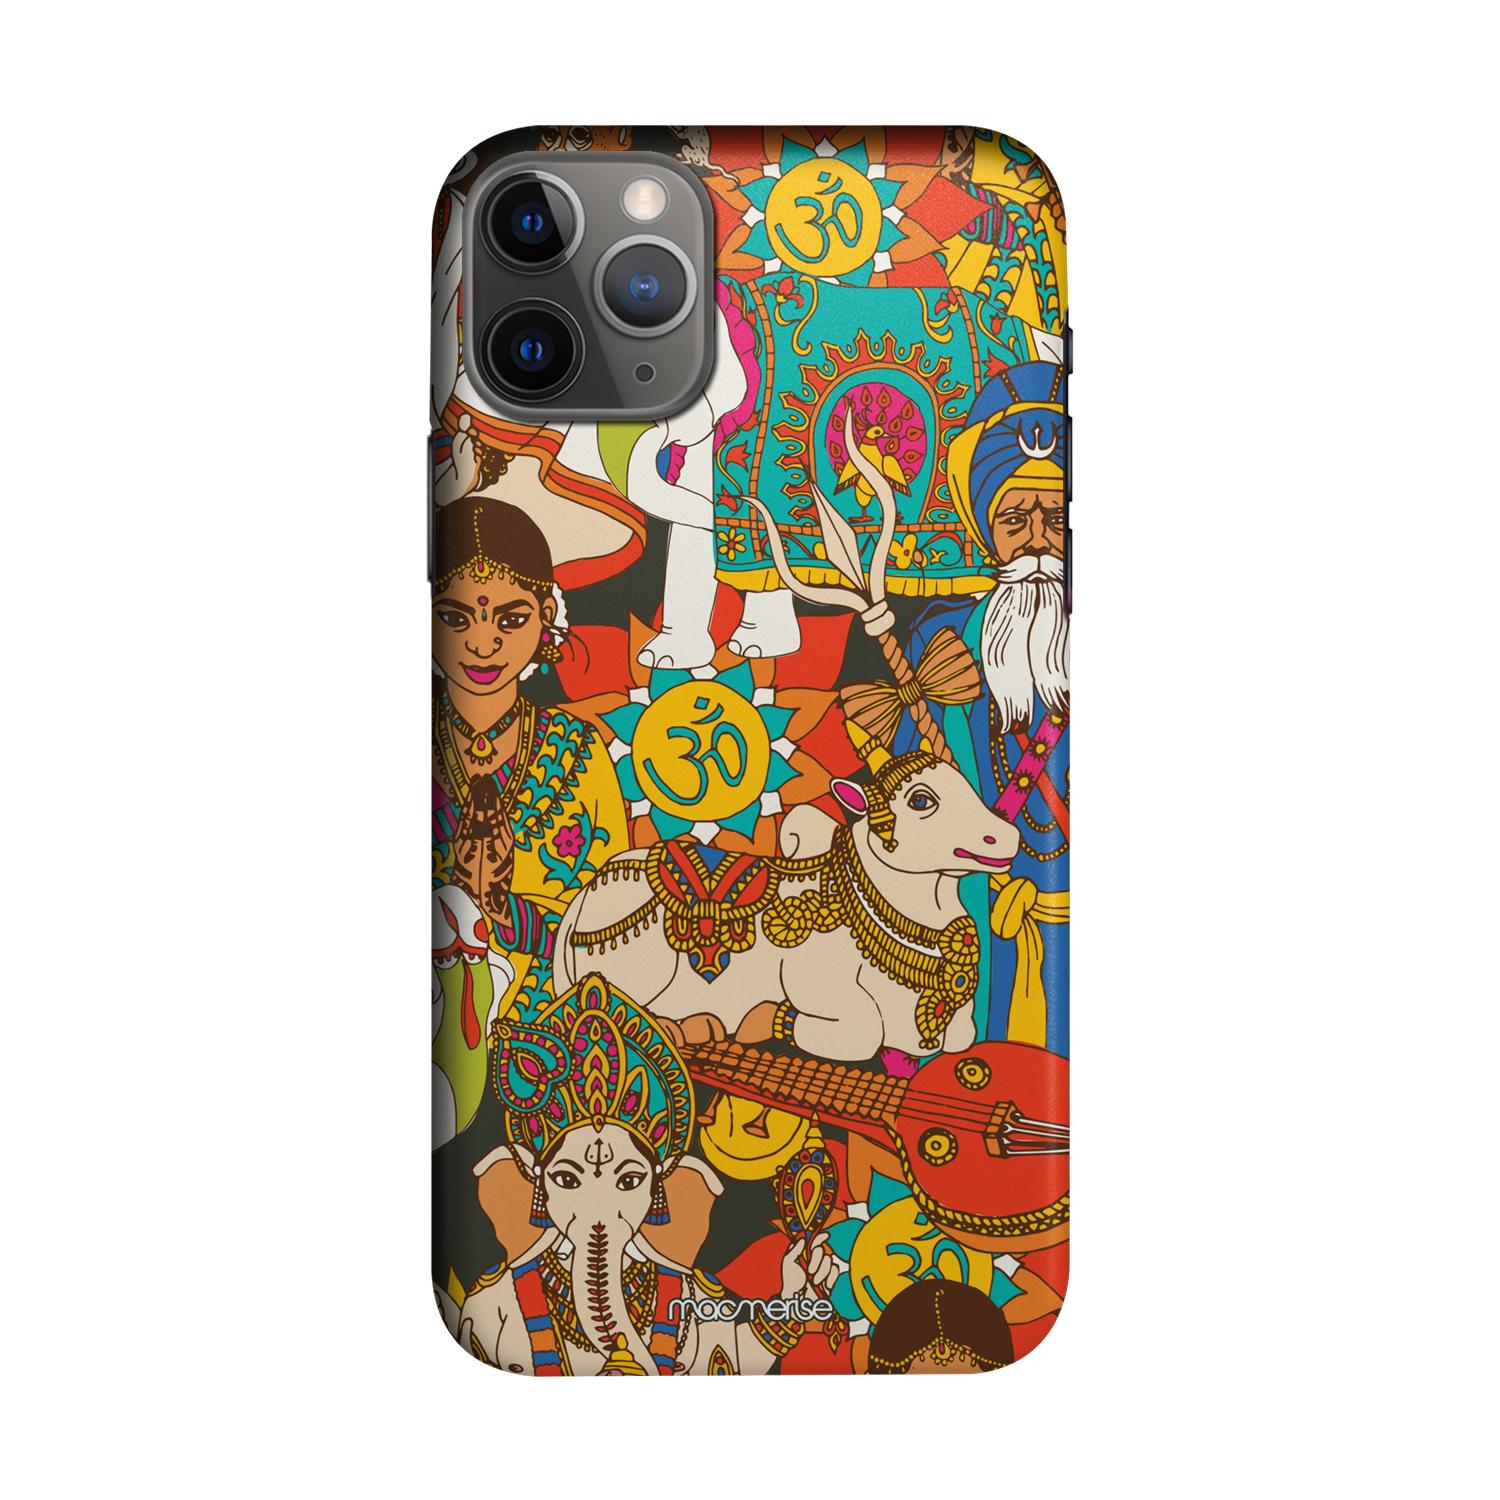 Namaste India - Sleek Phone Case for iPhone 11 Pro Max